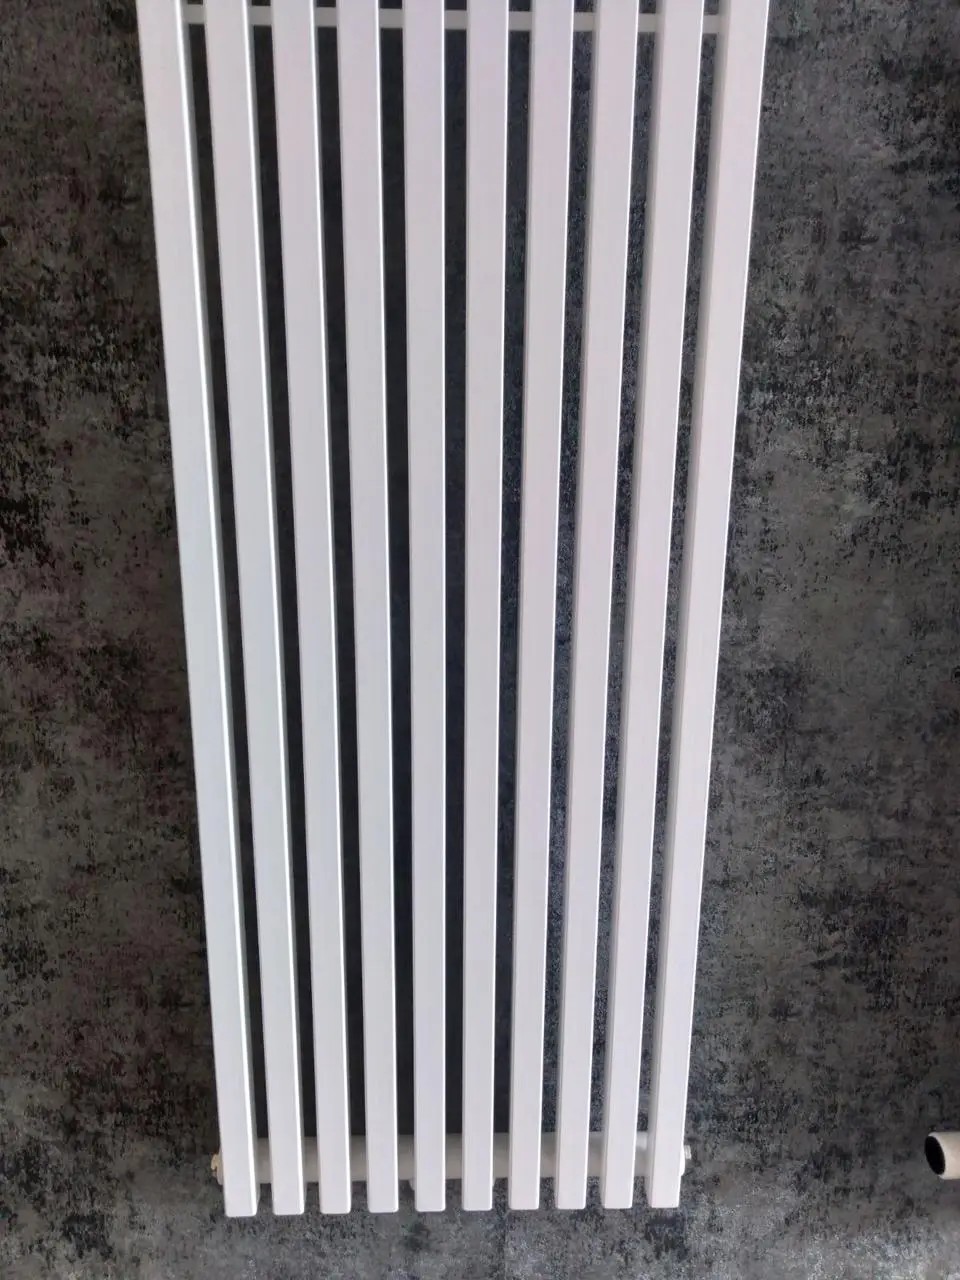 Радиатор для отопления Betatherm QUANTUM 2 H-1300мм, L-445мм (BQ 2130/11 9016 12) характеристики - фотография 7